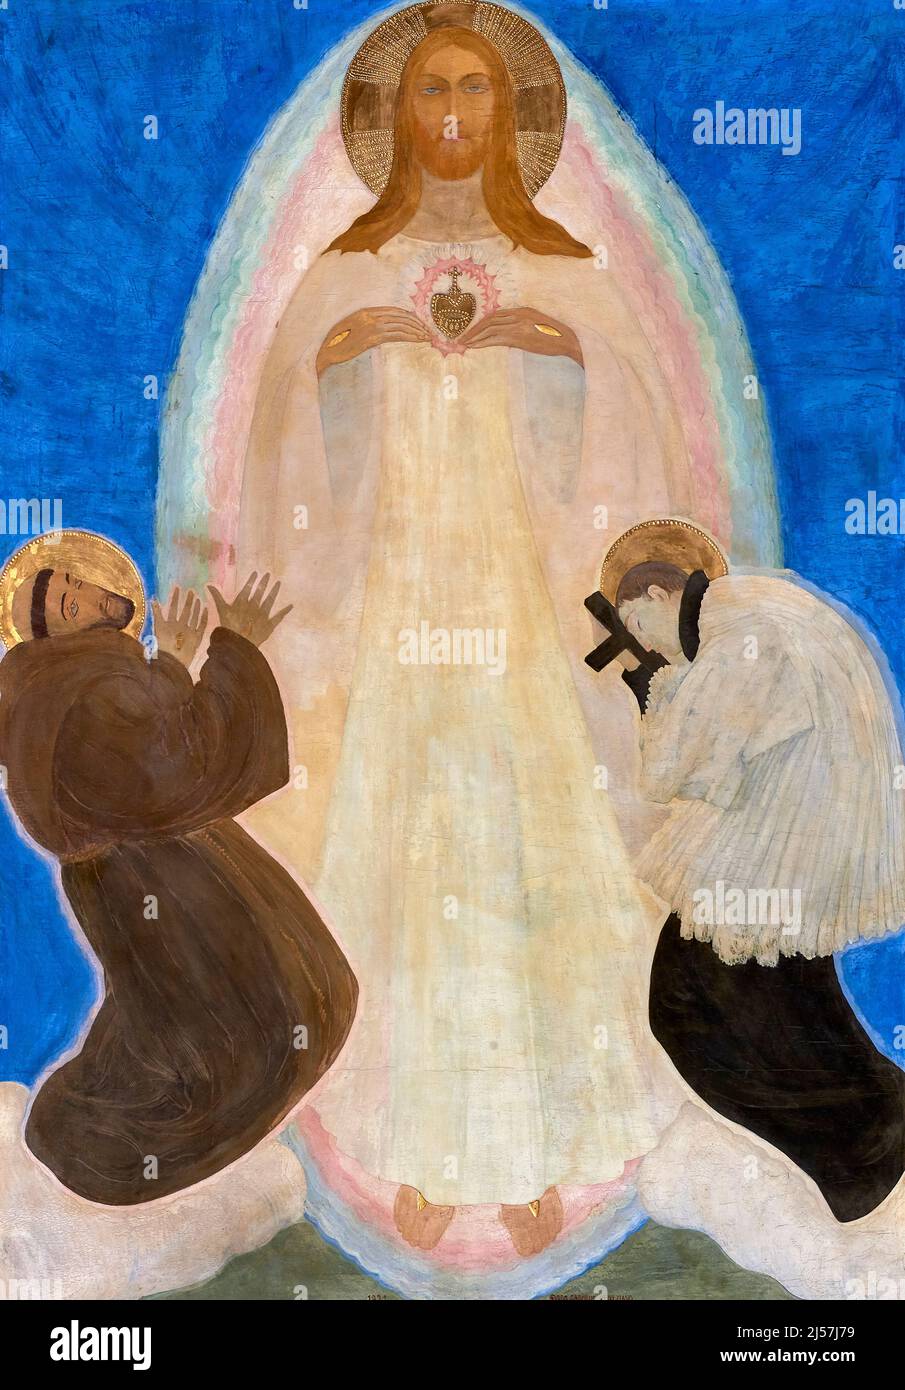 Sacro Cuore con San Francesco e San Luigi Gonzaga  - olio su tela - Guido Cadorin  - 1921 - Bergantino (Ro), Italia, chiesa parrocchiale di S.Giorgio Stock Photo